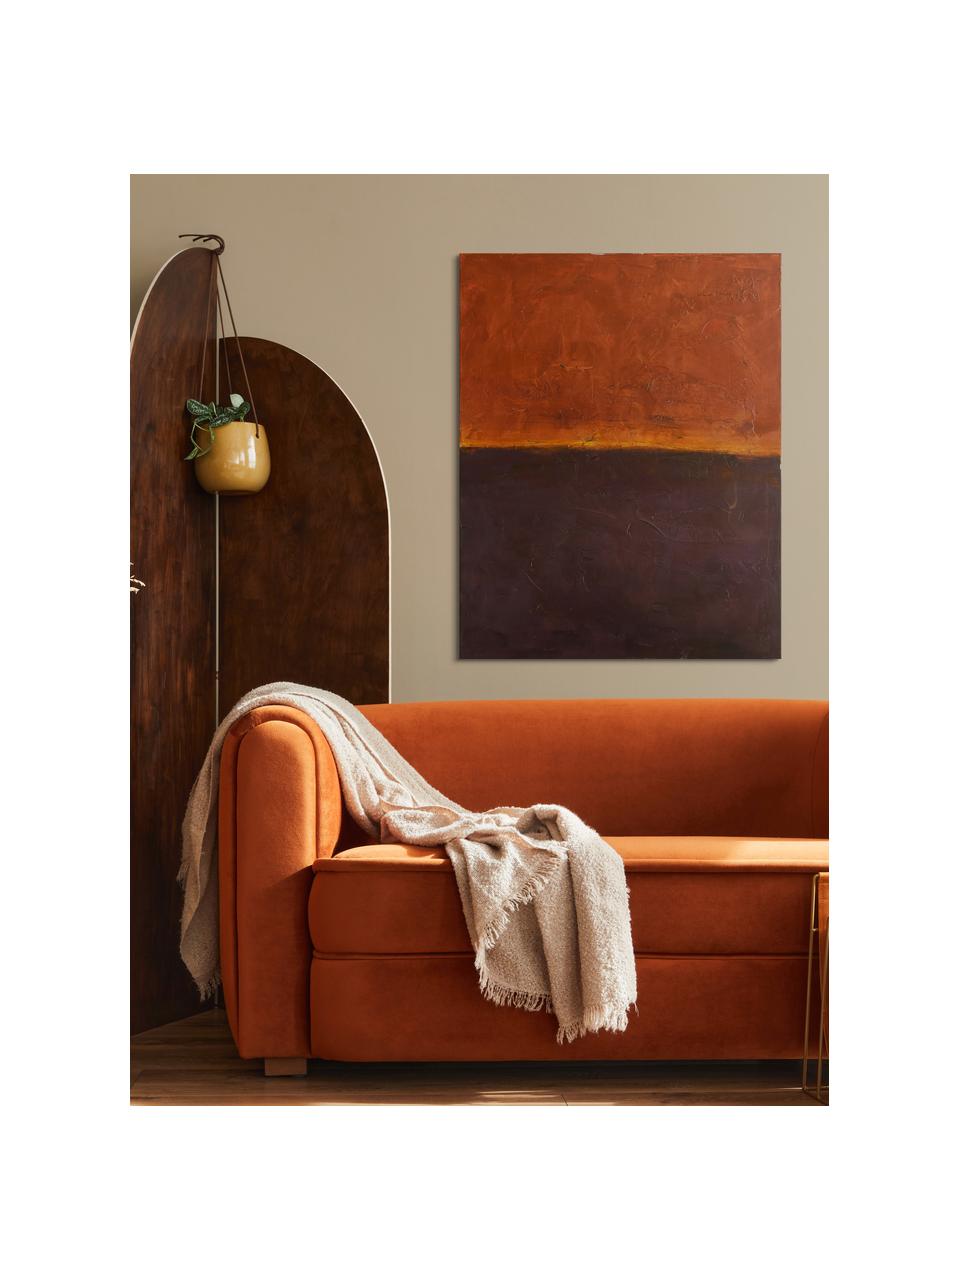 Peinture sur toile réalisée à la main Edge Red, Aubergine, orange, larg. 88 x haut. 118 cm